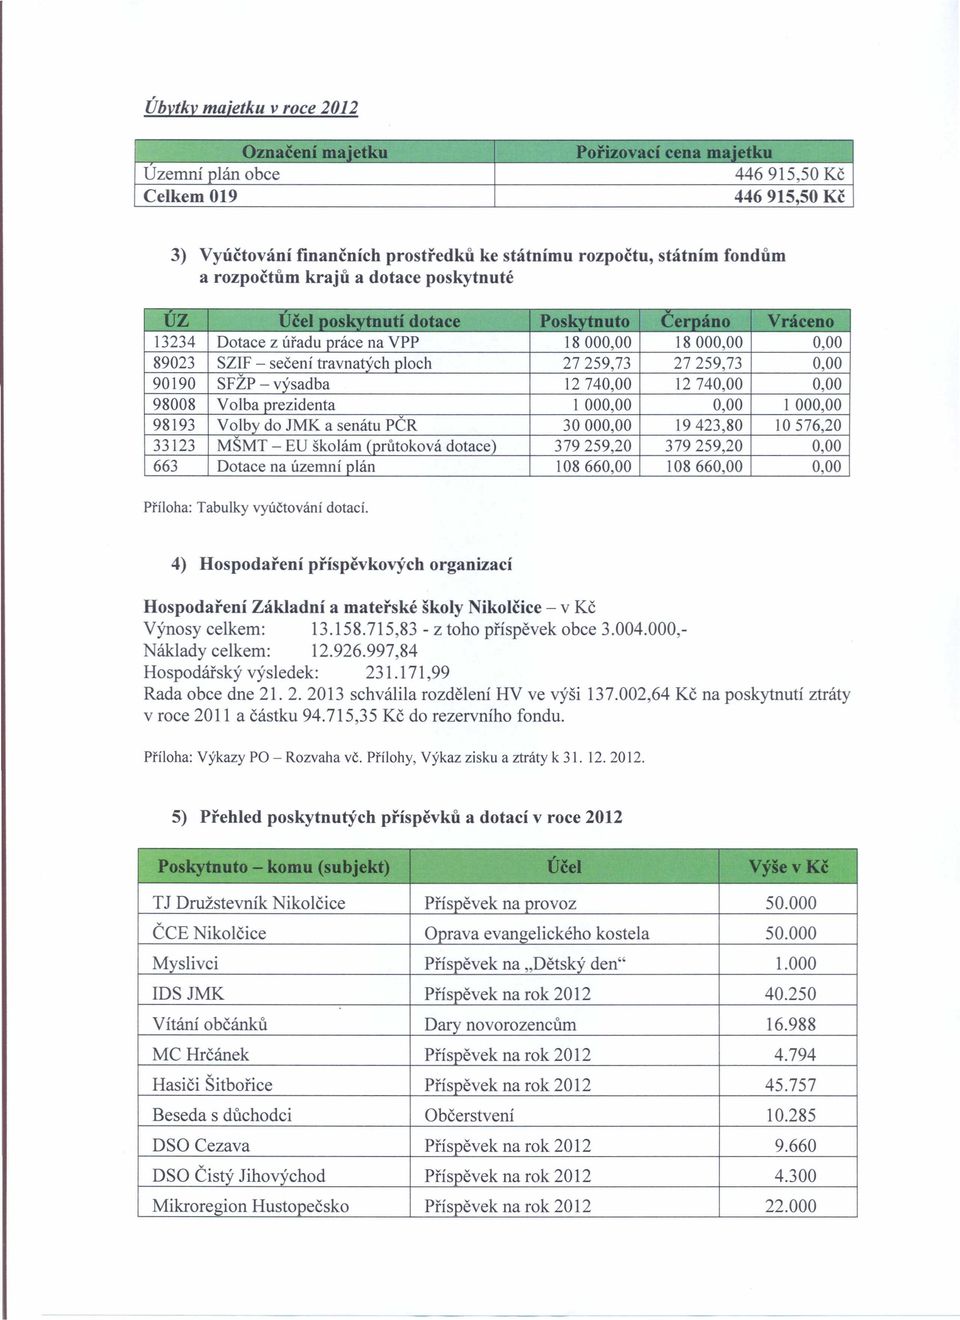 10576,20 Hospodaření Základní a mateřské školy Nikolčice - v Kč Výnosy celkem: 13.158.715,83 - z toho příspěvek obce 3.004.000,- Náklady celkem: 12.926.997,84 Hospodářský výsledek: 231.